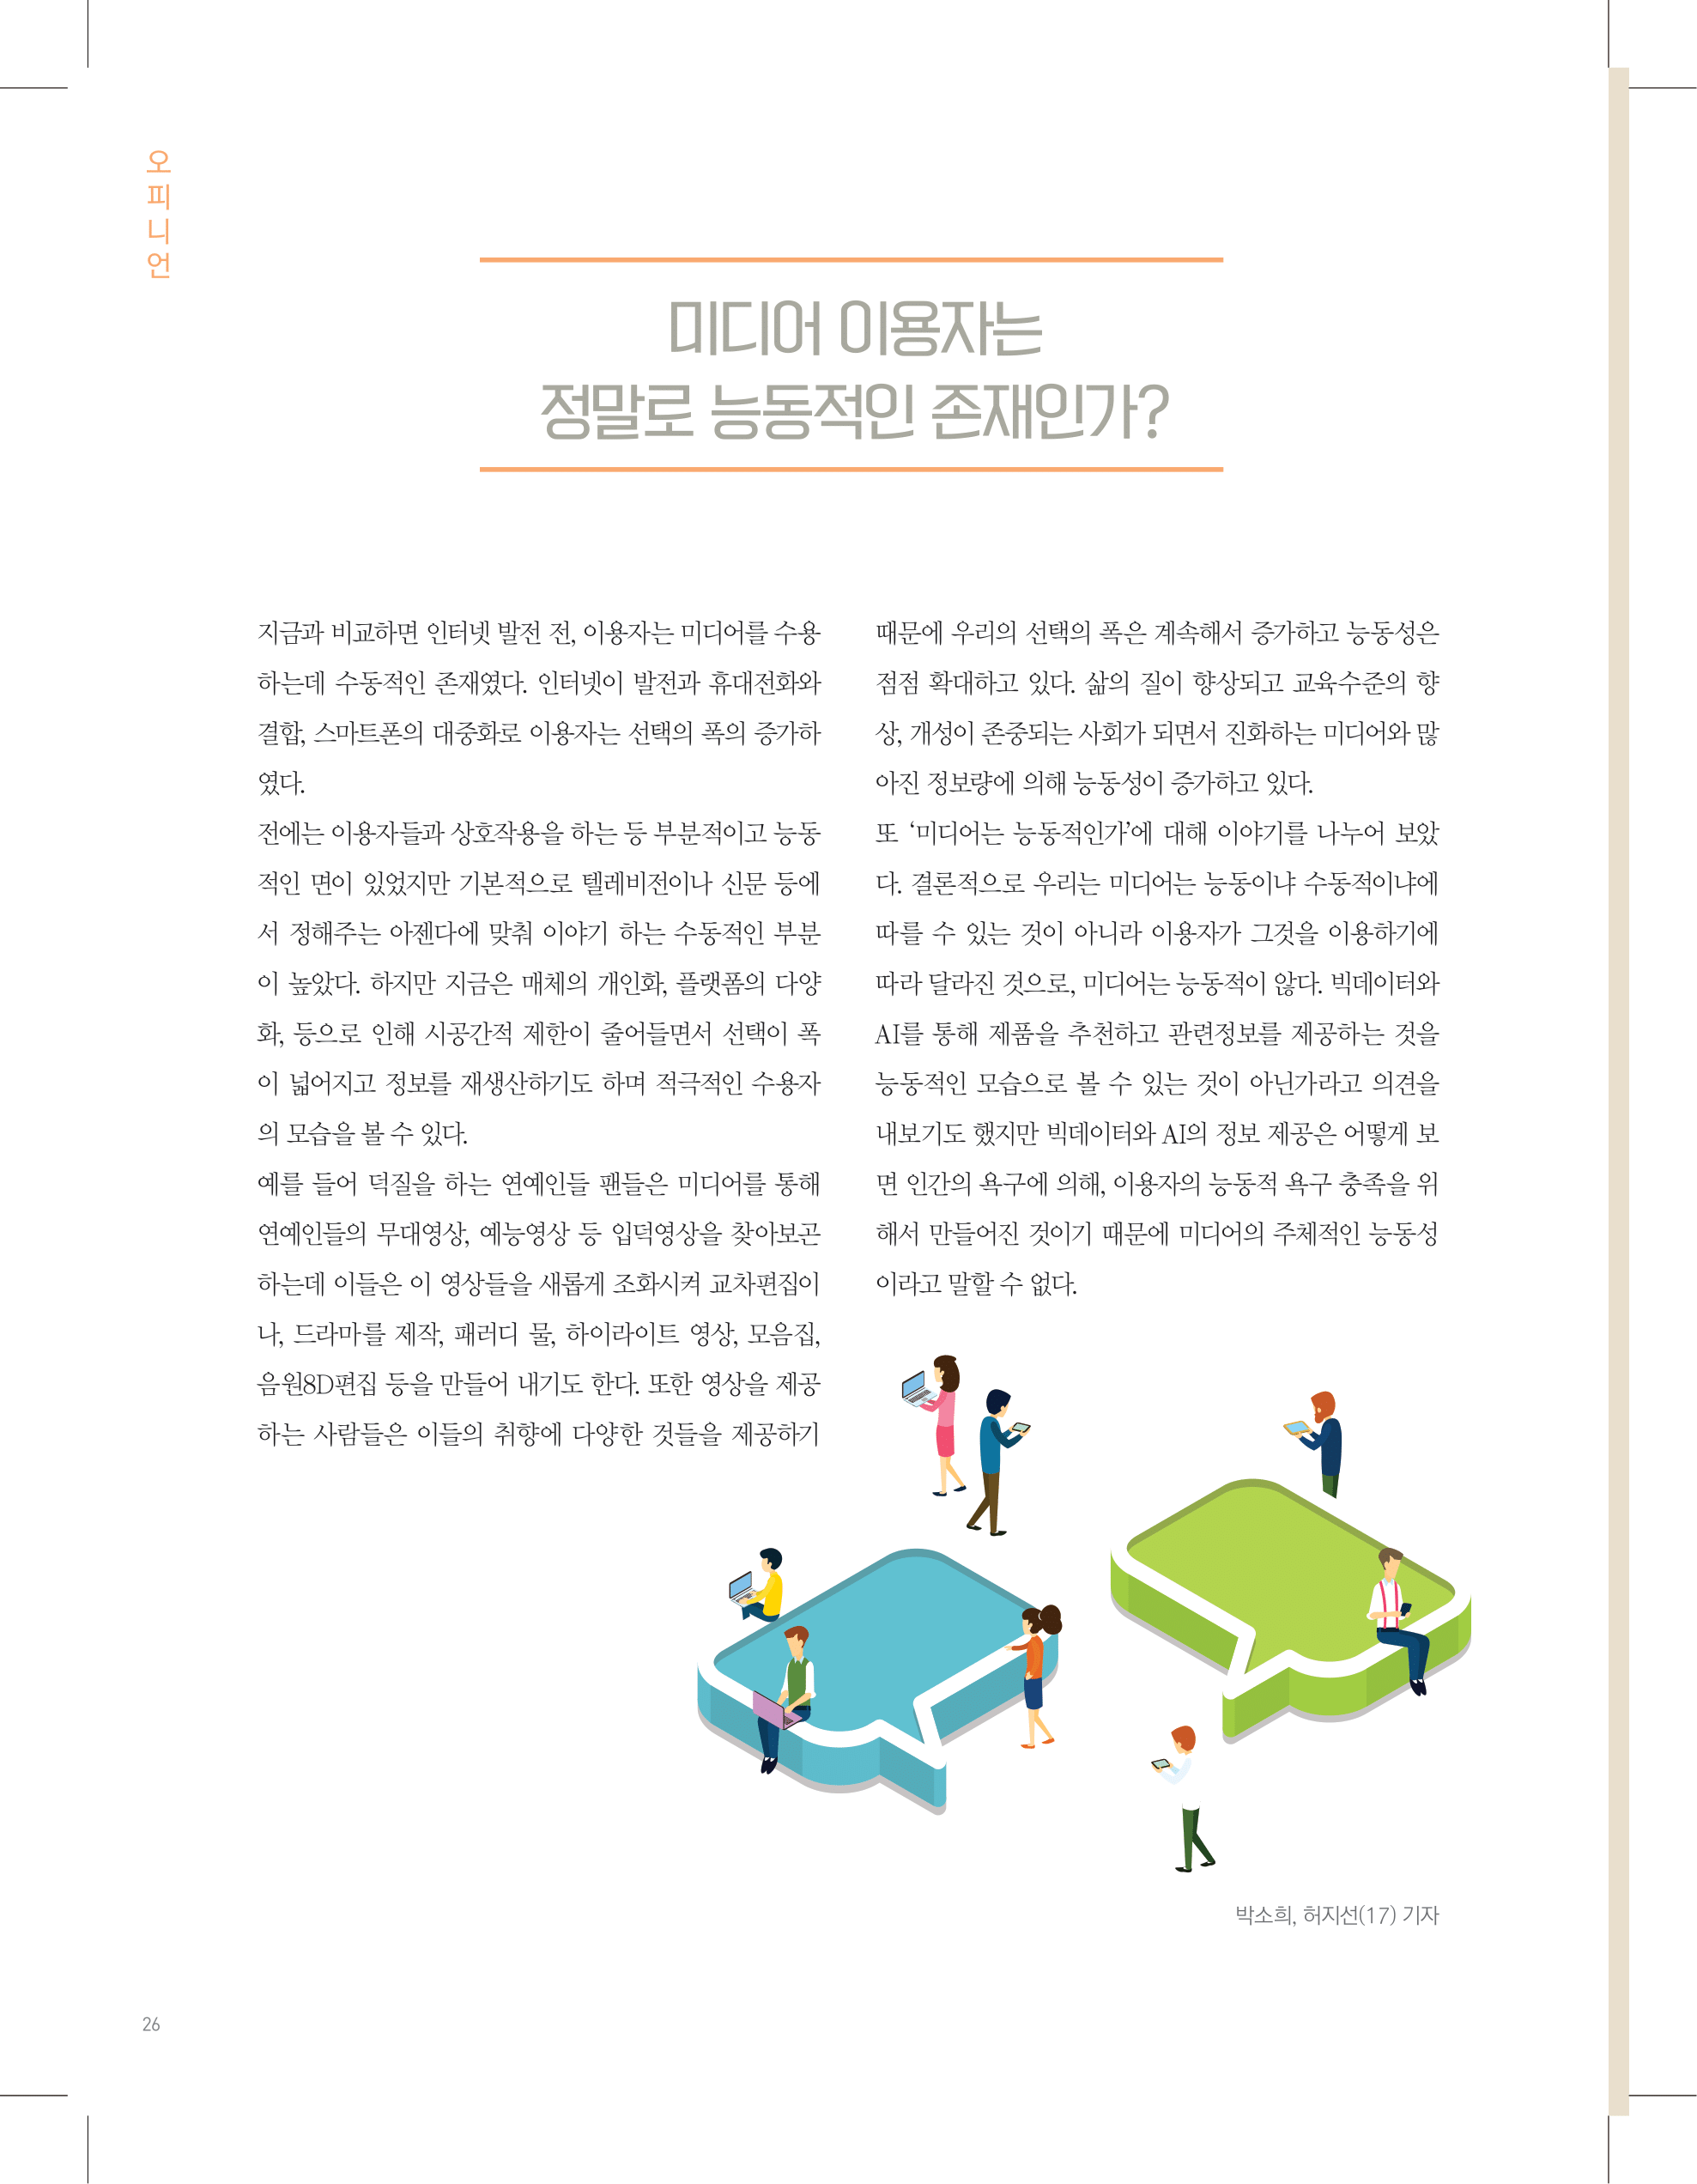 뜻새김 신문 74호 26